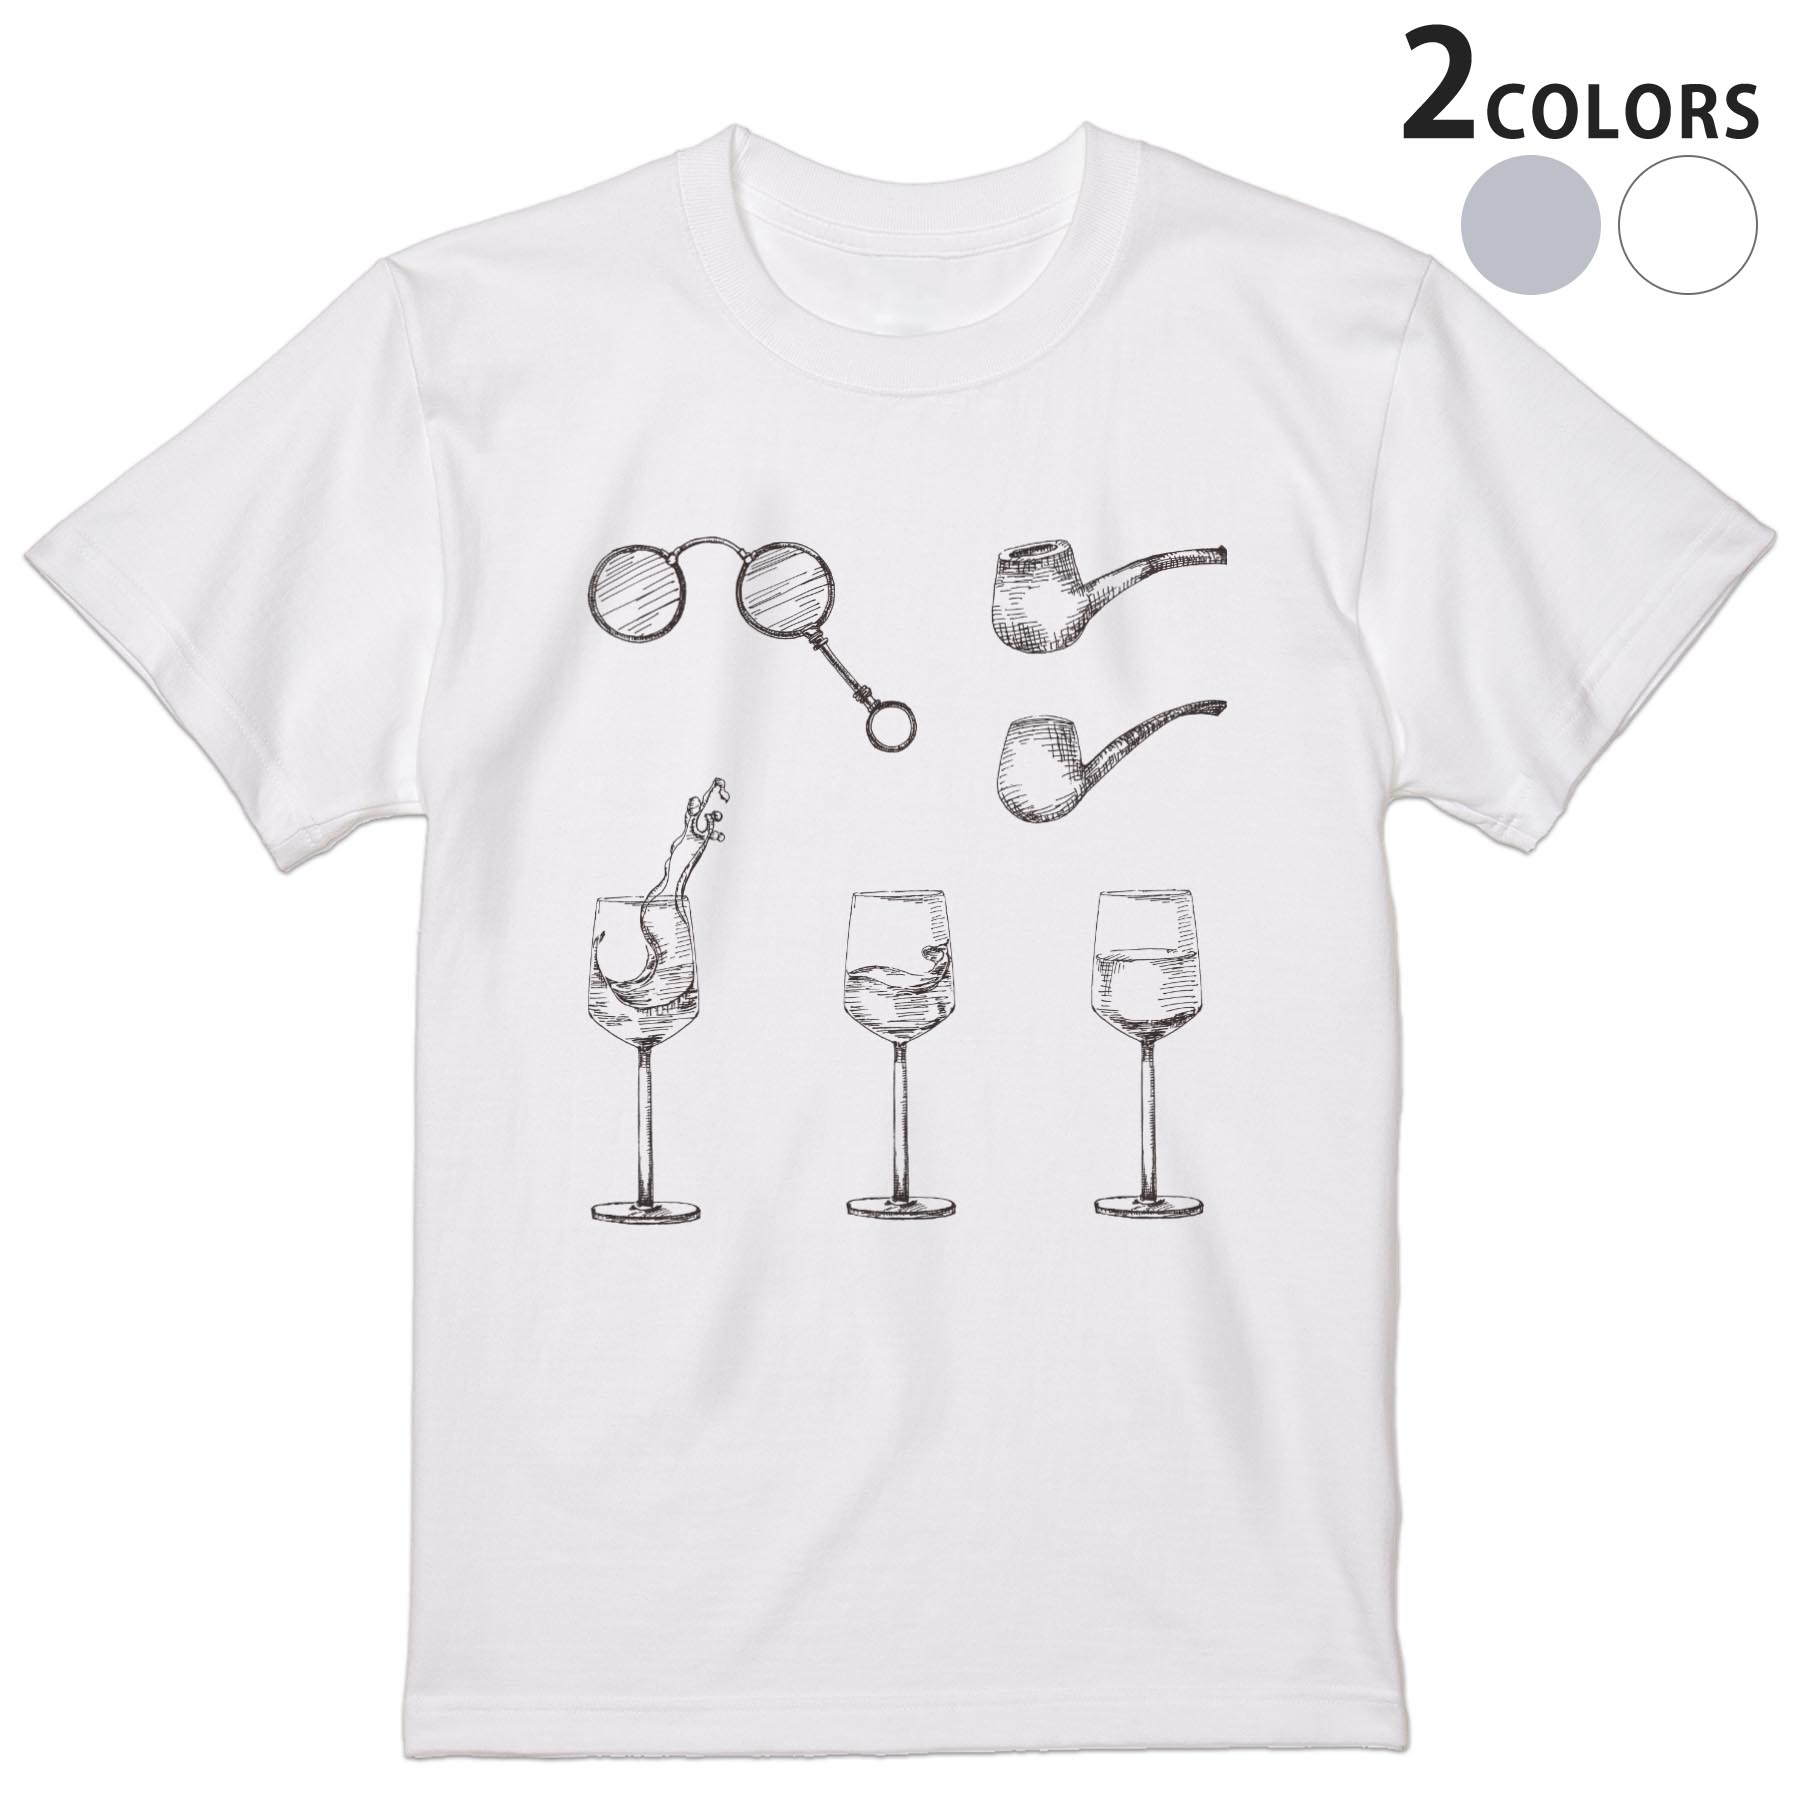 Tシャツ メンズ 半袖 ホワイト グレー デザイン S M L XL 2XL Tシャツ ティーシャツ T shirt 015284 ワイン 飲み物 お酒 グラス 手書き 絵